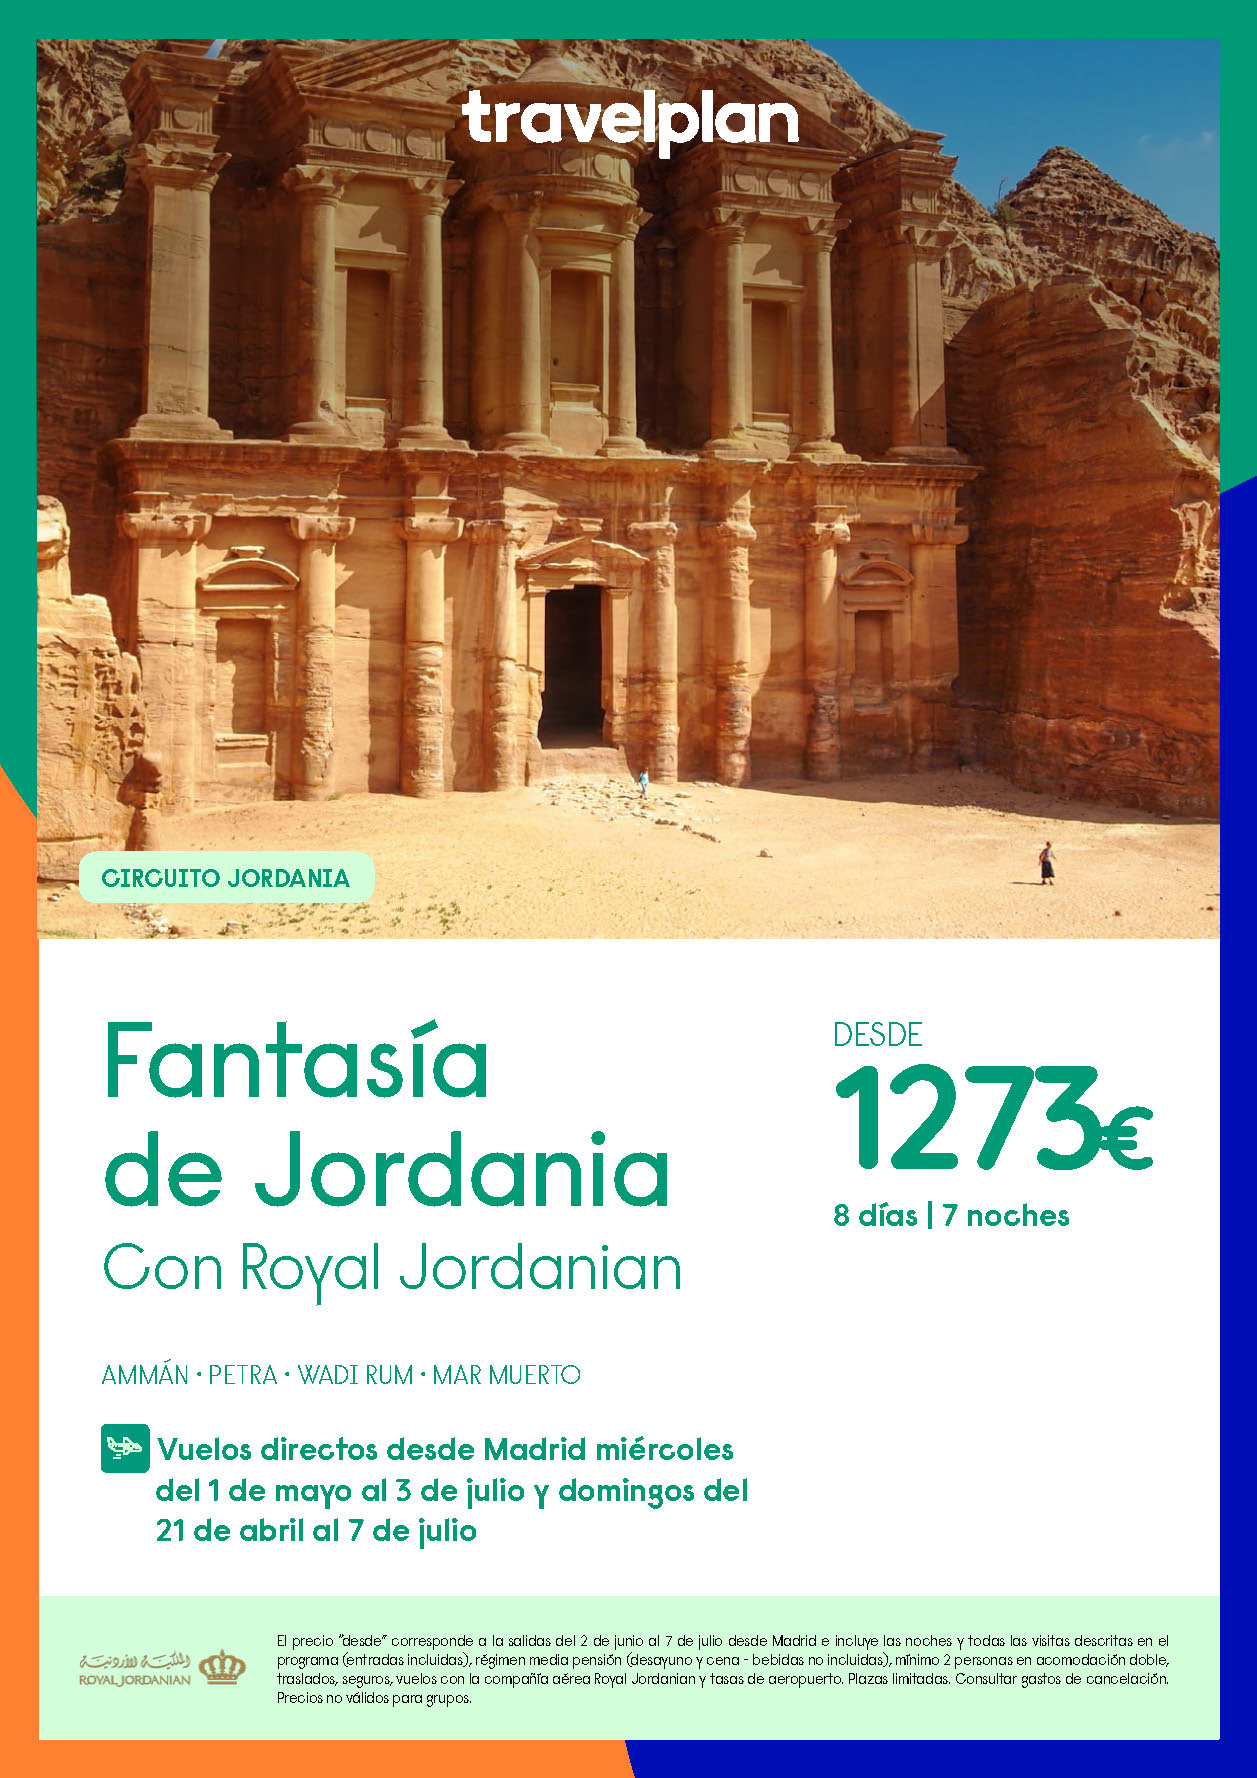 Oferta Travelplan circuito Fantasia de Jordania 8 dias salidas Abril a Junio 2024 vuelo directo desde Madrid Royal Jordanian